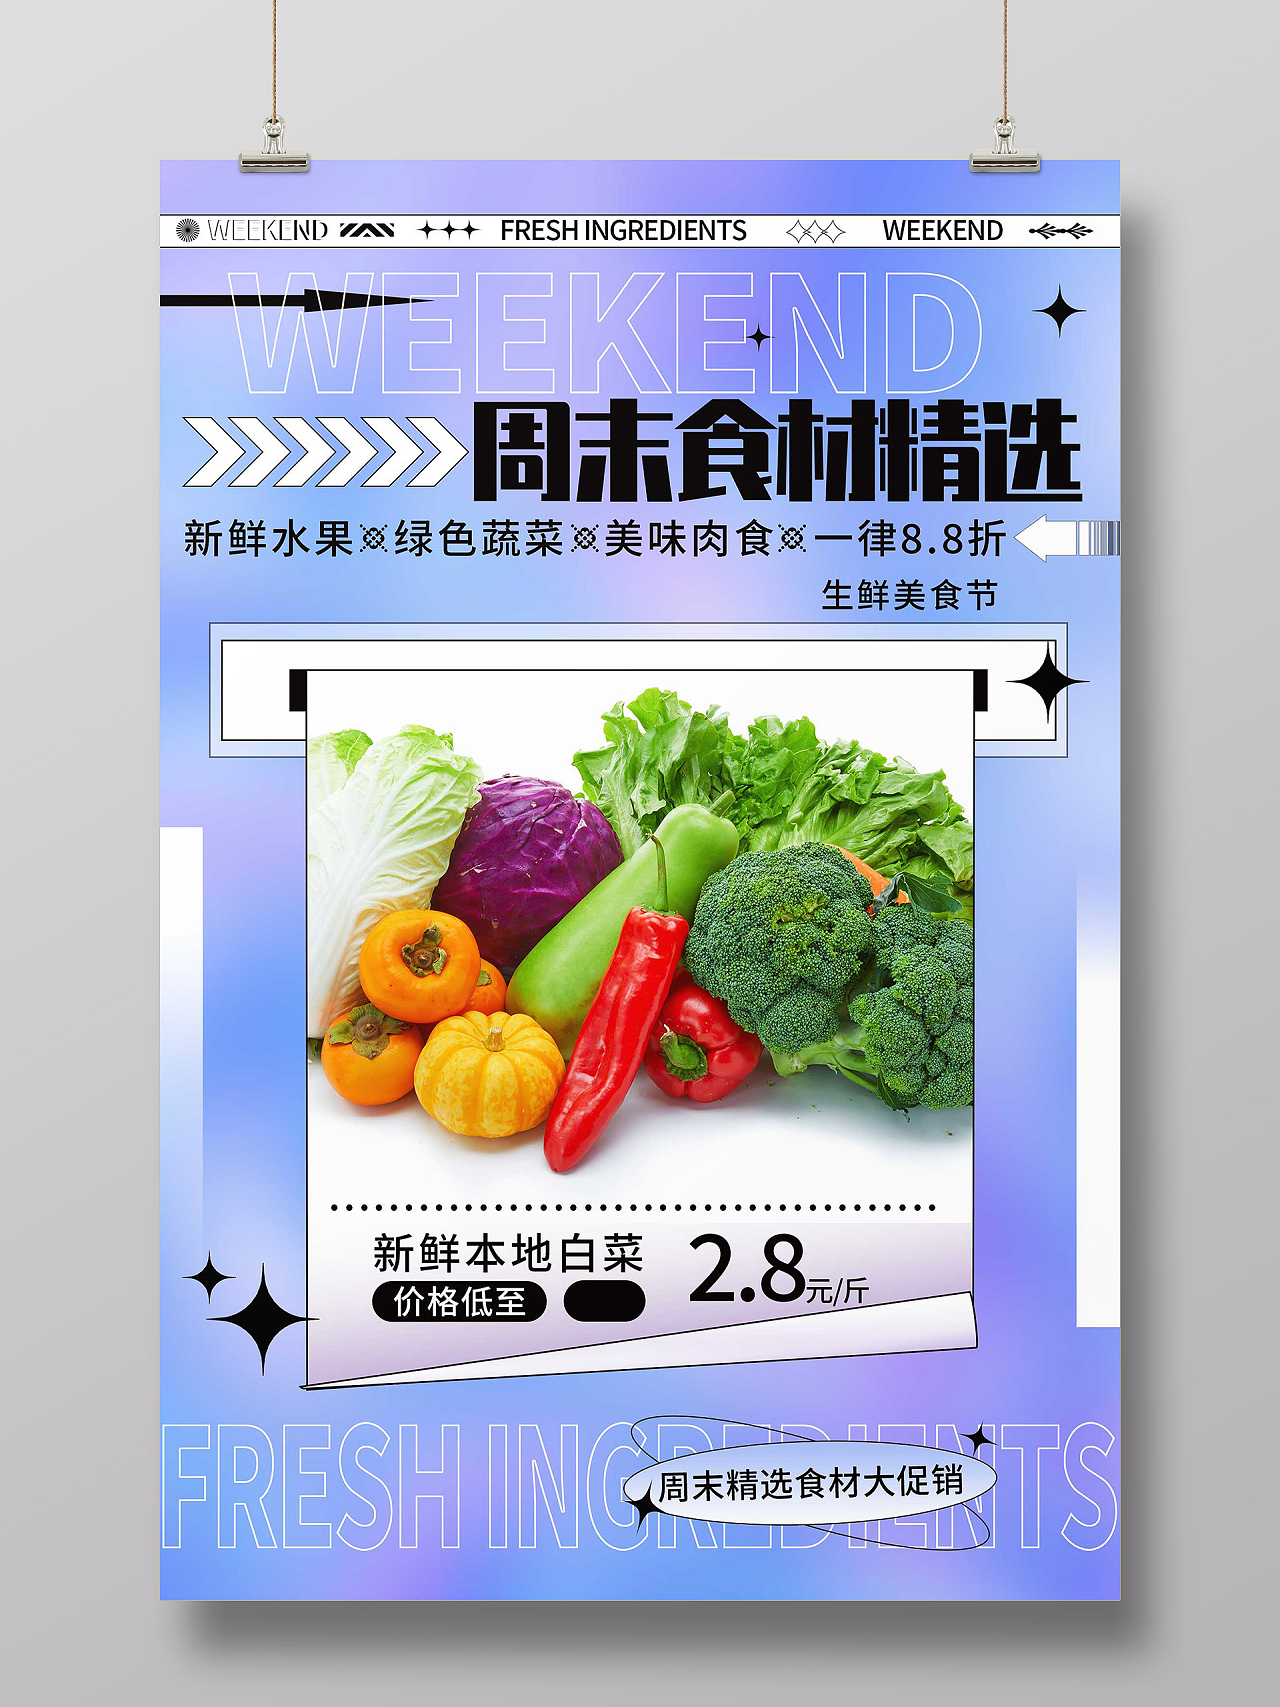 紫色酸性风周末食材精选促销活动宣传海报水果蔬菜海报